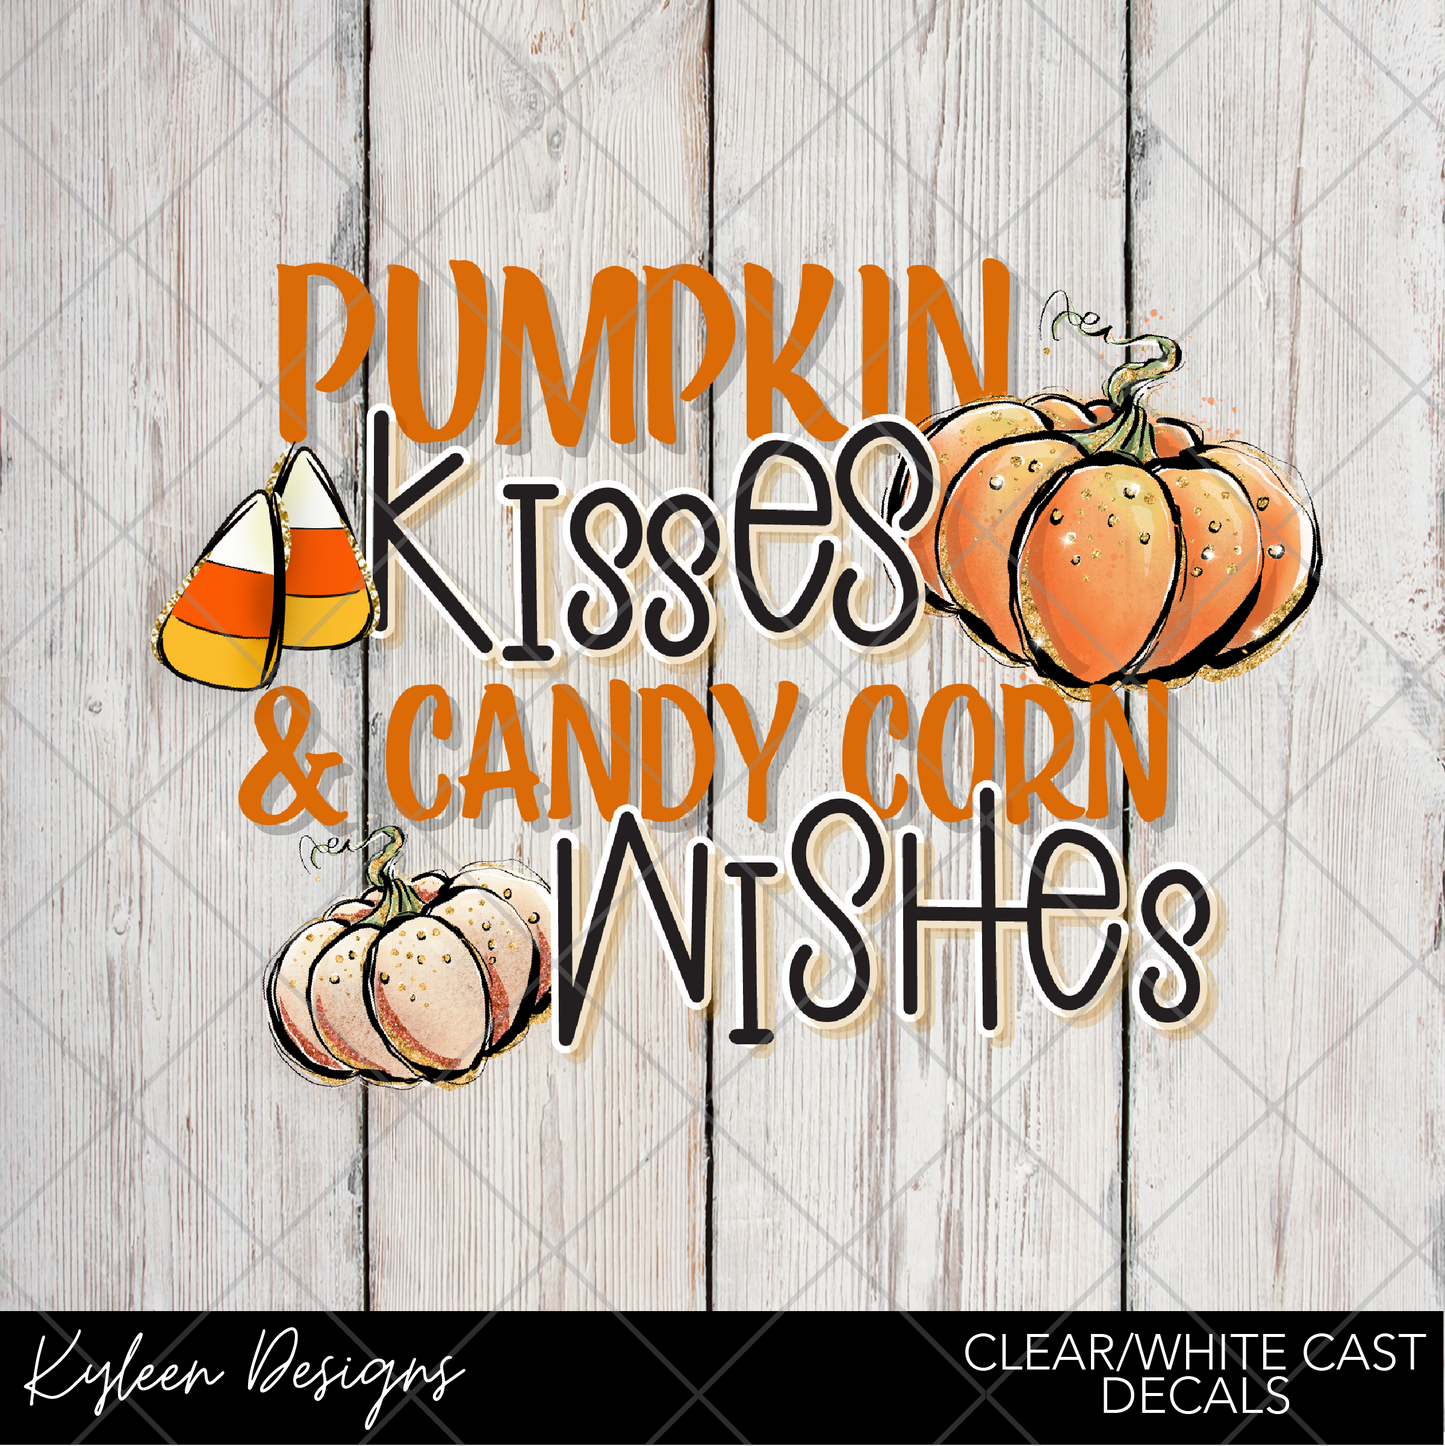 DreamCast™ Clear or White Cast- Pumpkin Kisses